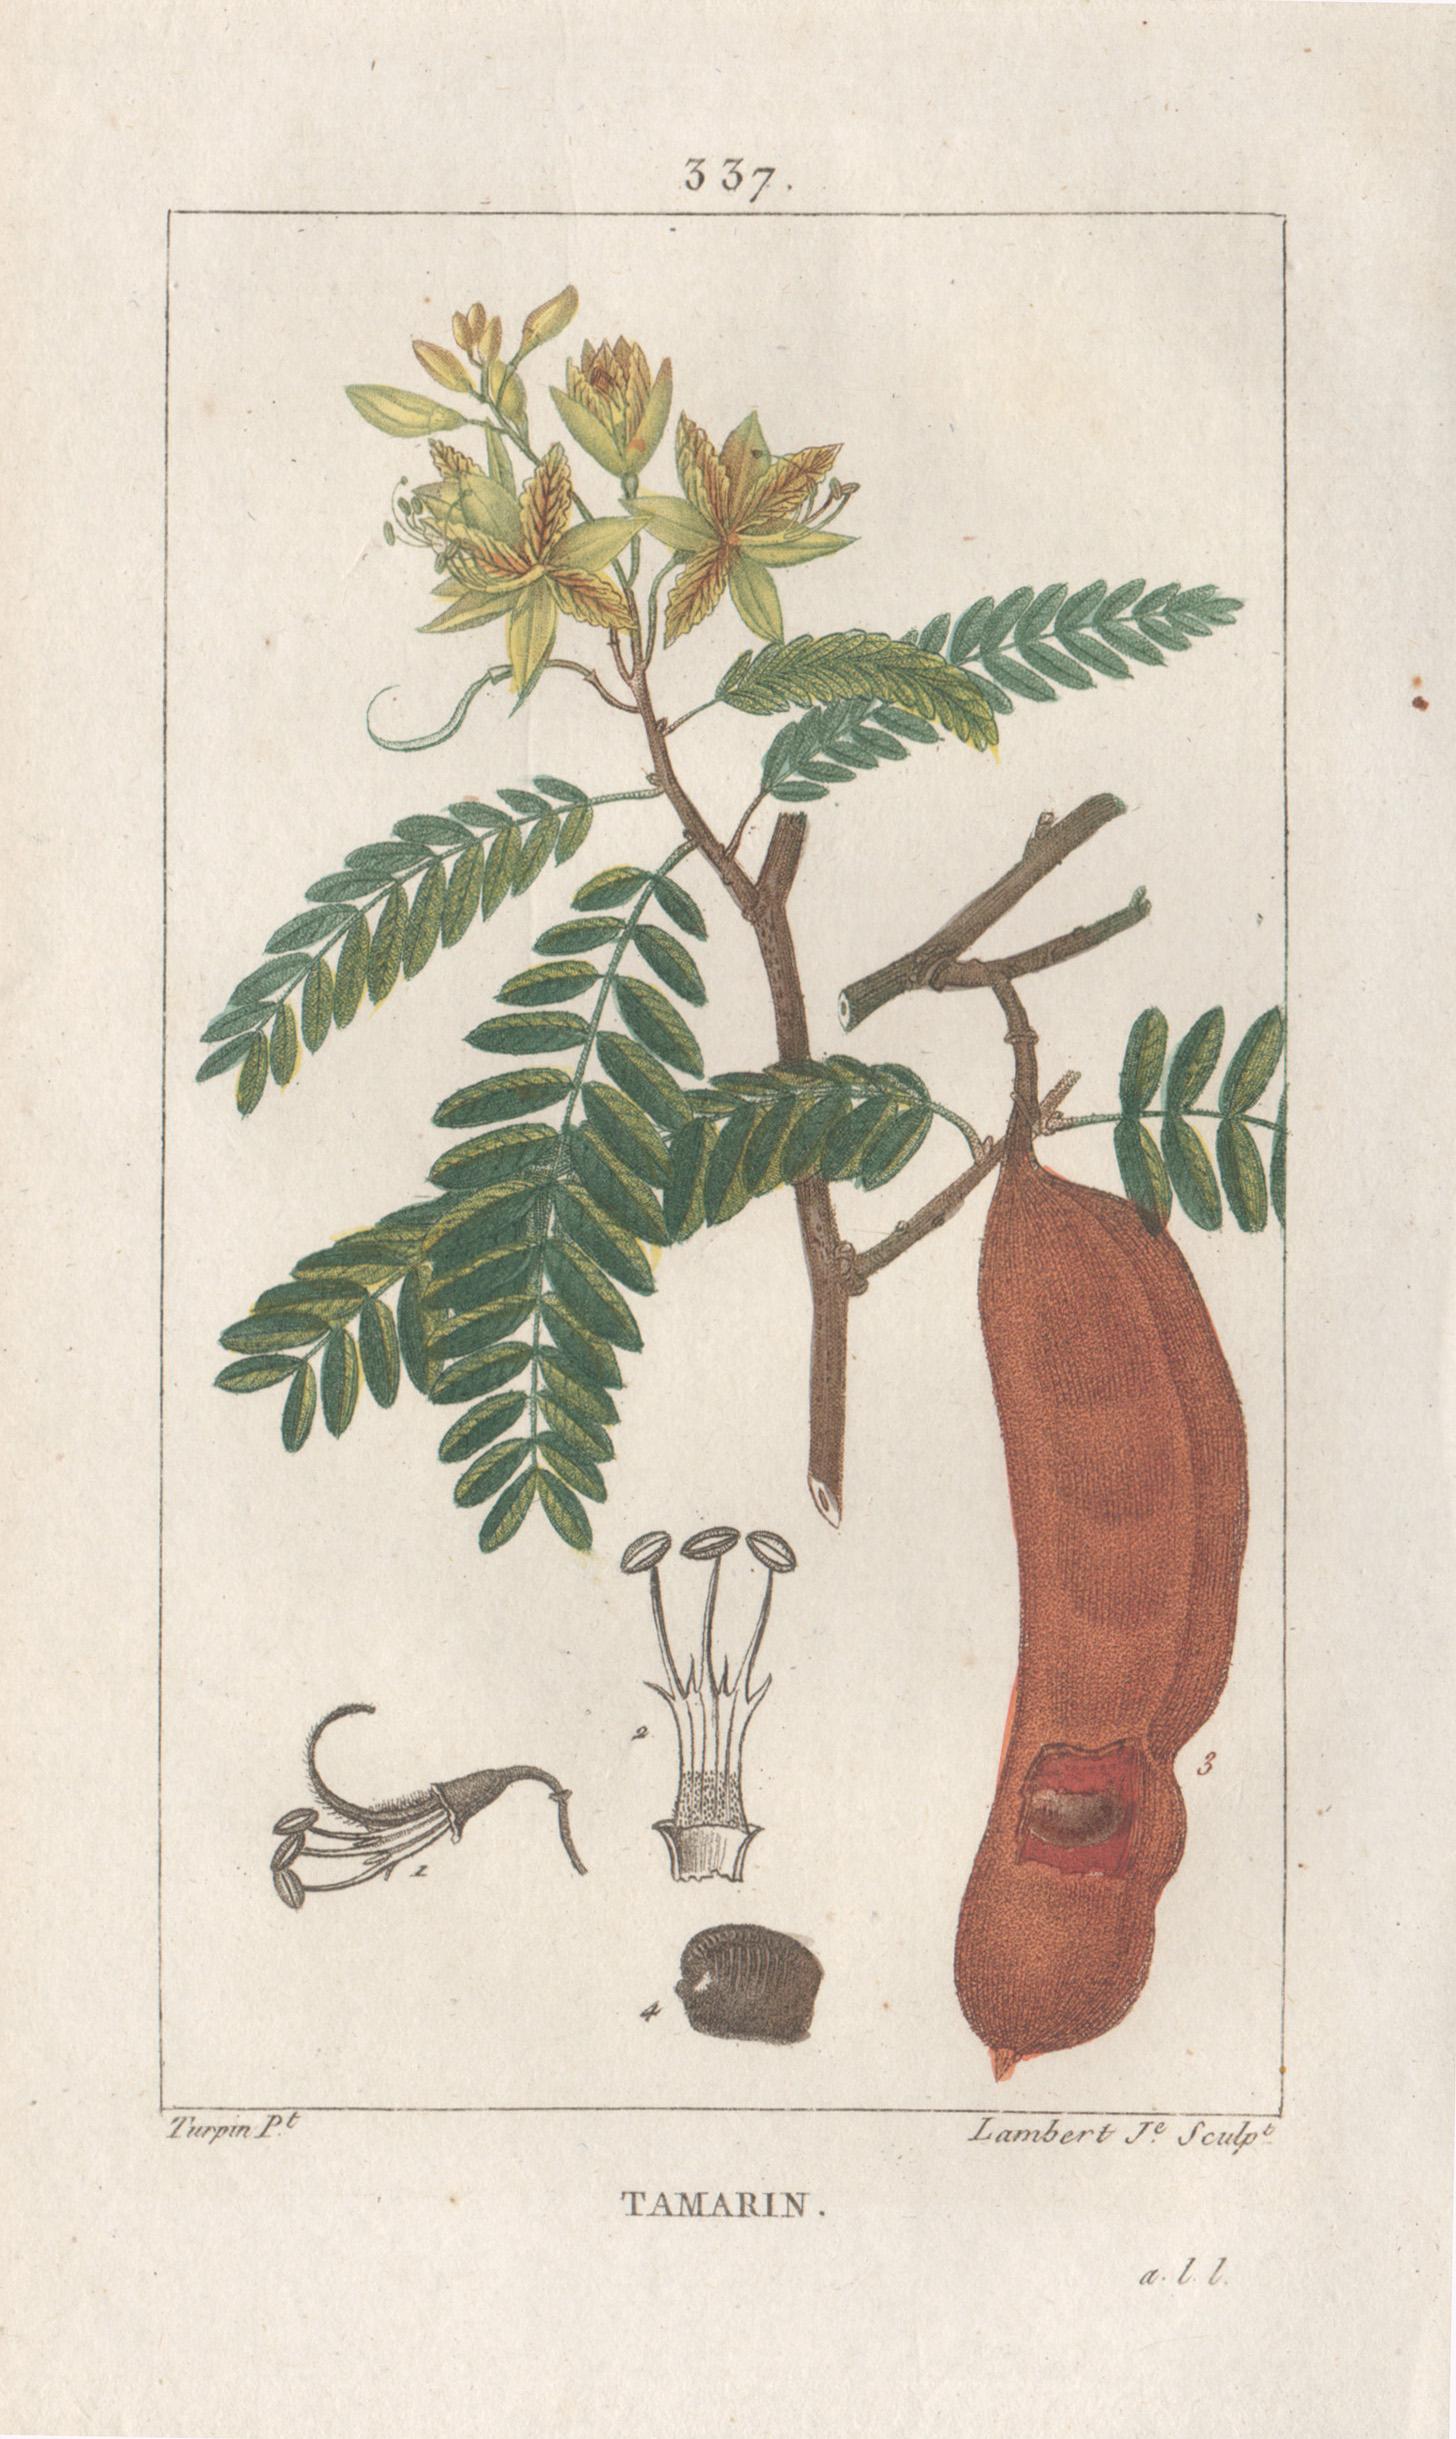 Aigue-marine (Tamarind), gravure française de fleurs herboriques et médicinales, 1818